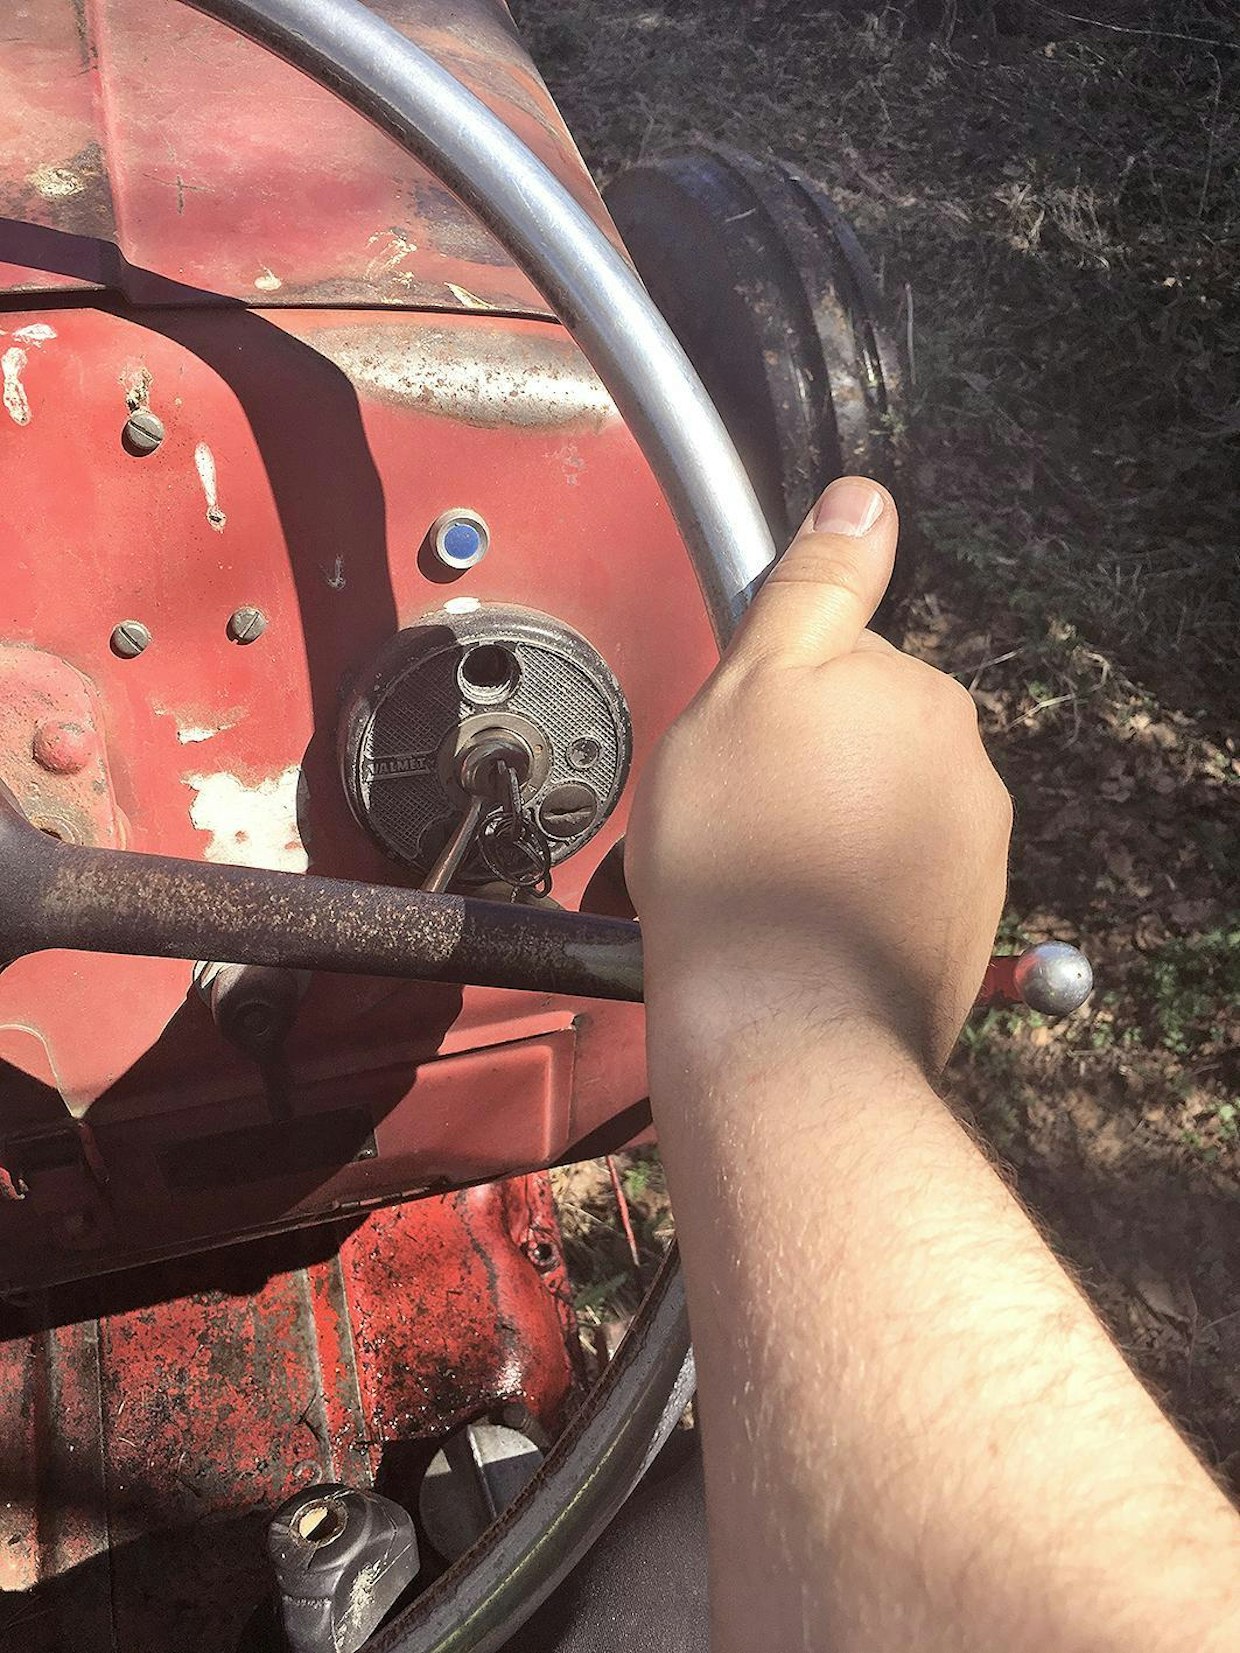 Muista peukalo! Tehostamattomalla ohjauksella varustella traktorilla ajaessa peukku on syytä pitää kehän ulkopuolella.